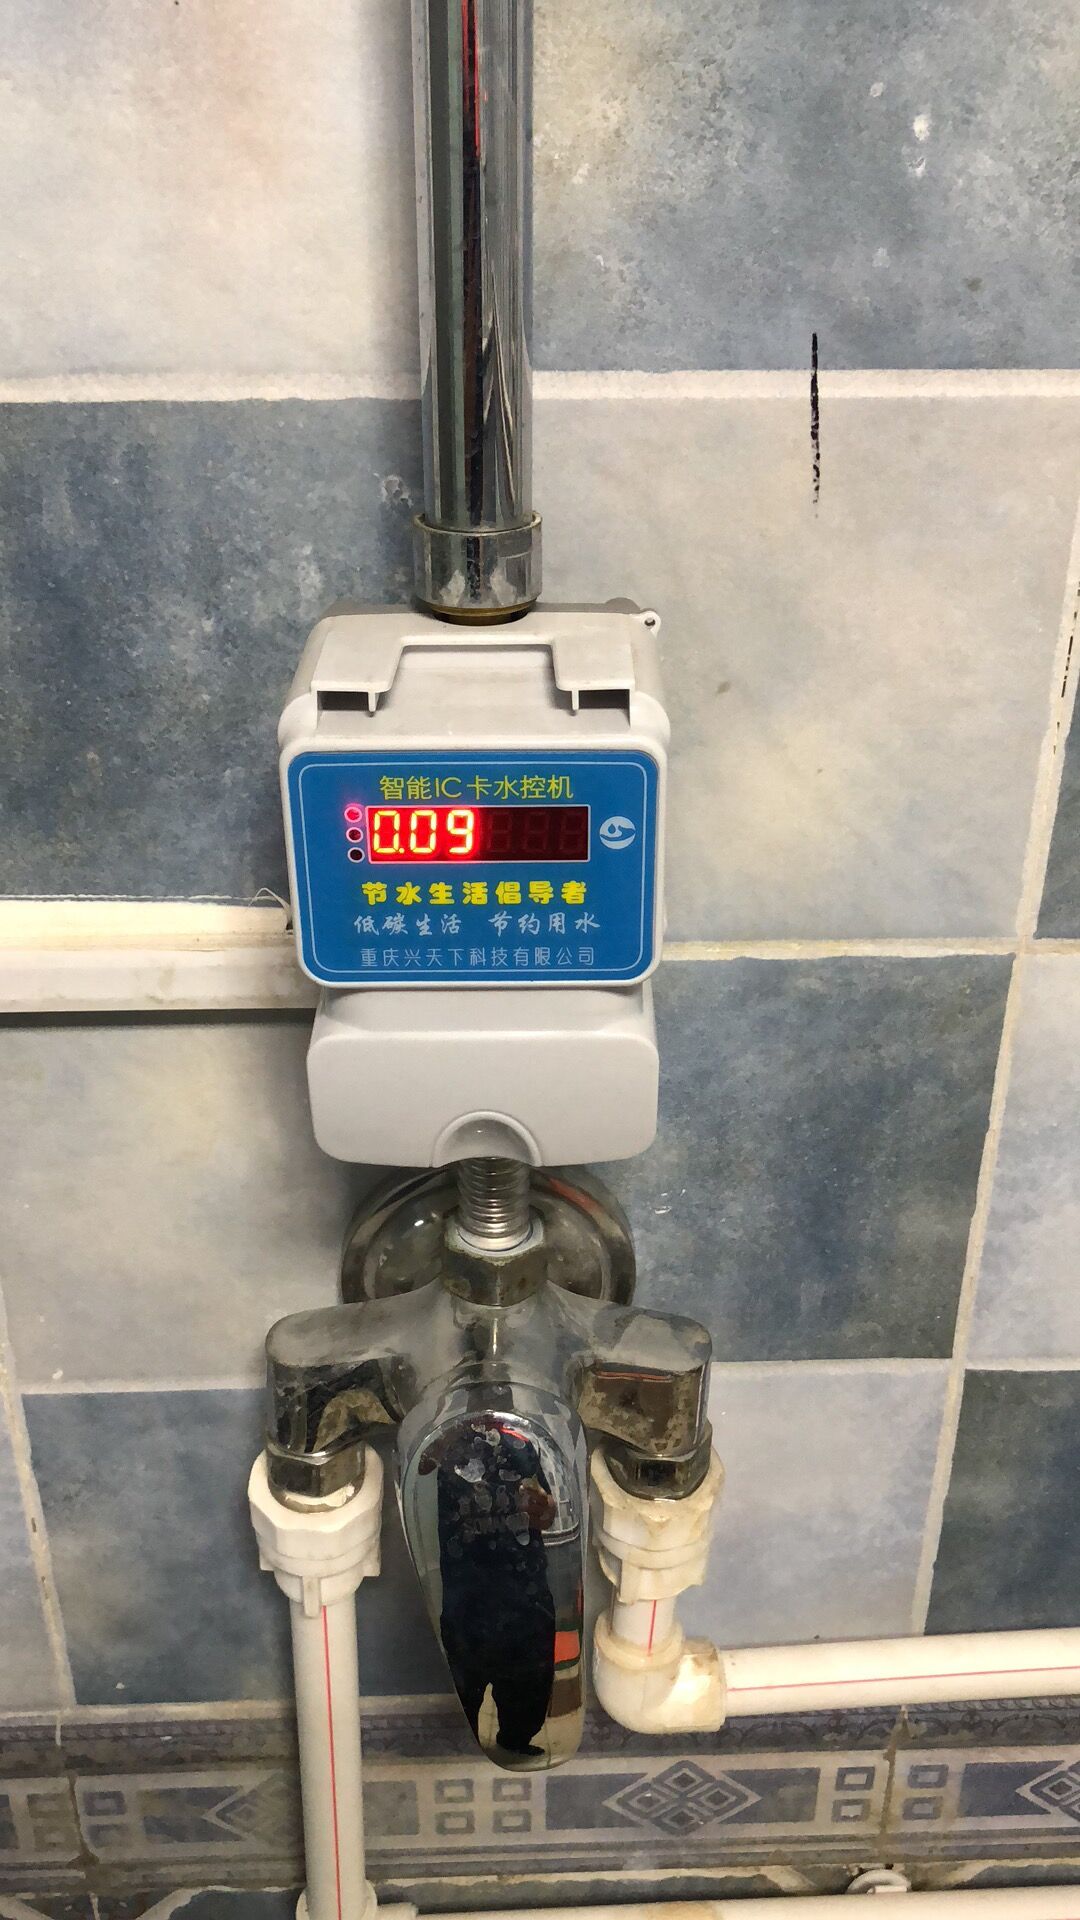 洗澡控制器学生付费一体水控机插卡淋浴扣费机